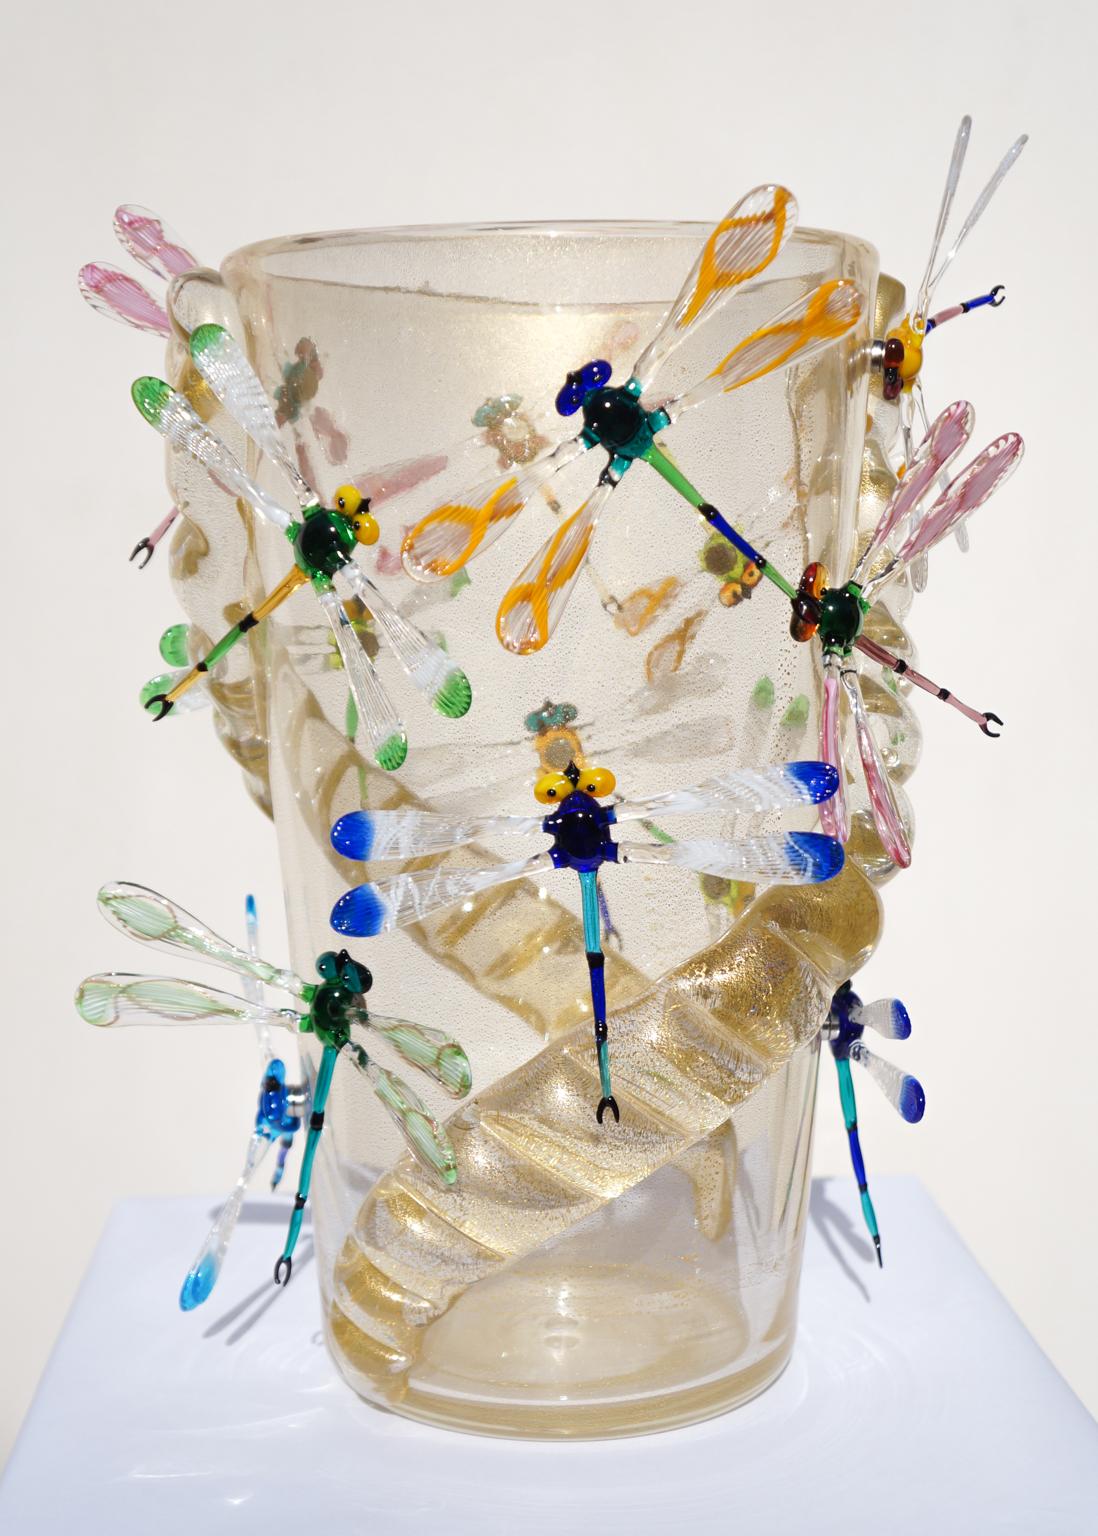 Handgefertigte Vase aus mundgeblasenem Murano-Glas mit echtem 24-karätigem Blattgold und mehrfarbigen Libellen, die mit einem Magneten befestigt sind. 
Die Vase enthält 14 Libellen.
Moderne Vase ideal für eine moderne und rustikale klassische